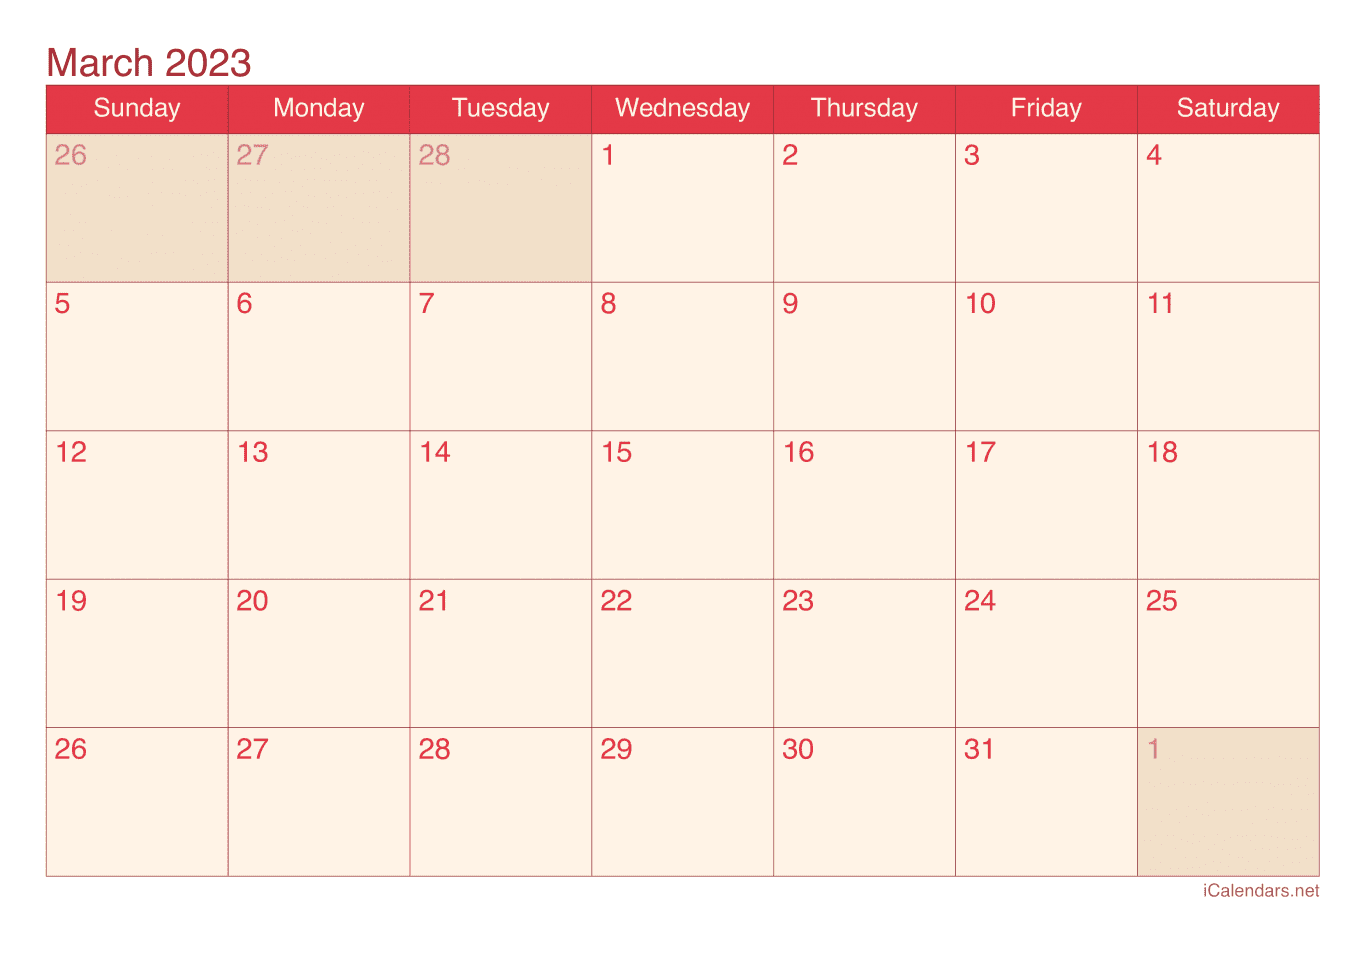 2023 March Calendar - Cherry